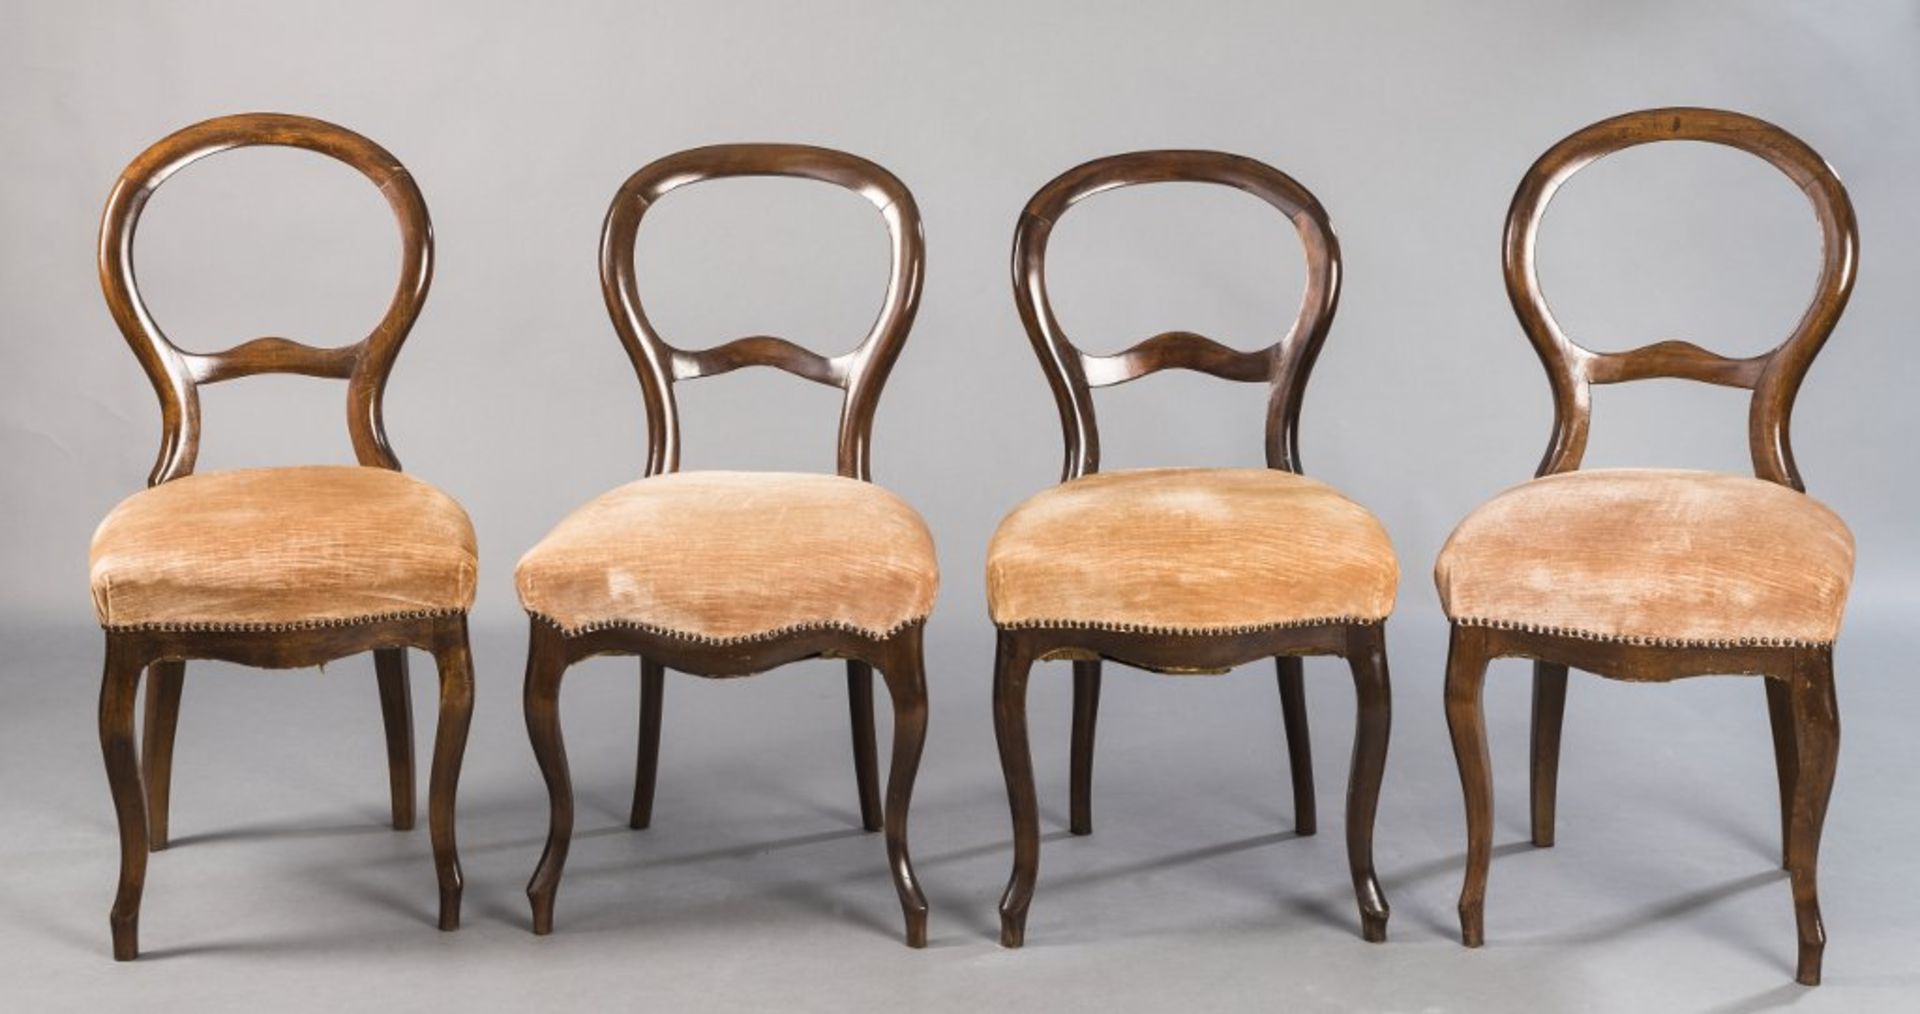 Satz von vier Louis-Philippe-Stühlen mit ballonartigen Lehnen. Nussbaum. Mitte 19. Jh. H 95 (48) cm